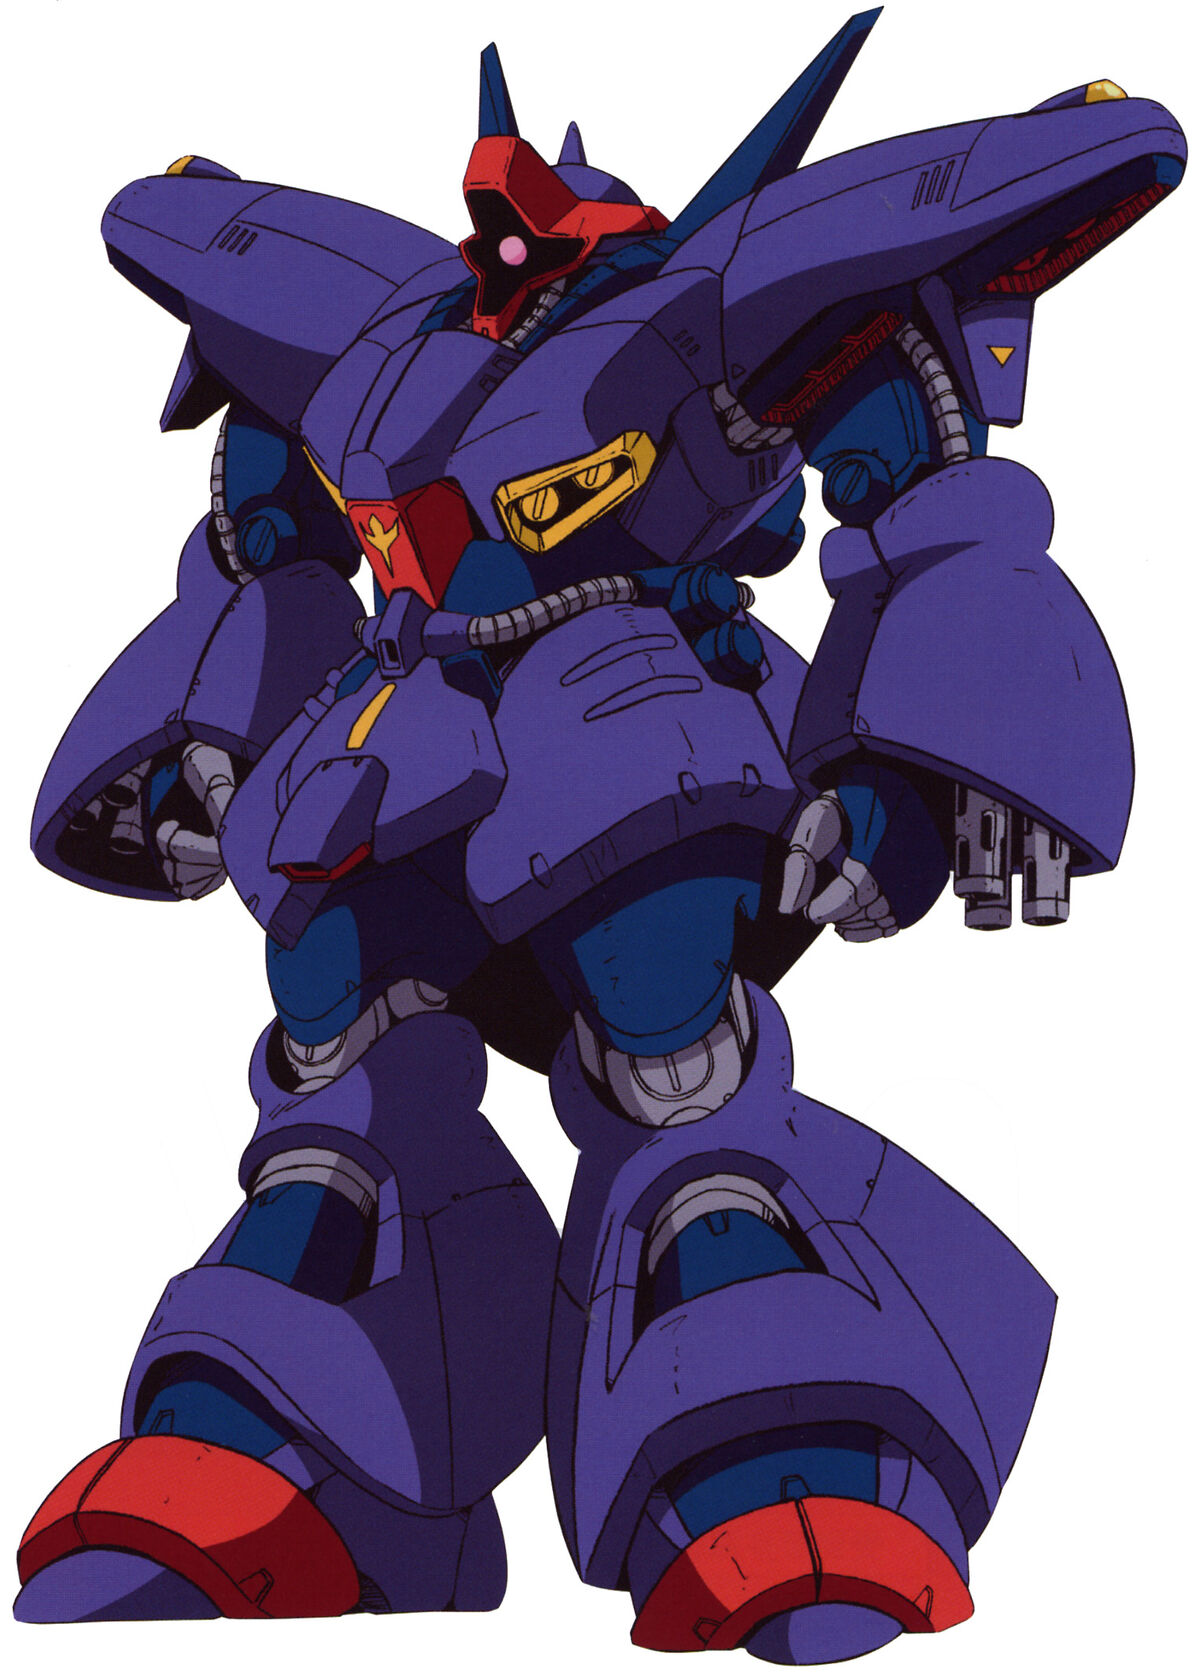 AMX-009 Dreissen, The Gundam Wiki